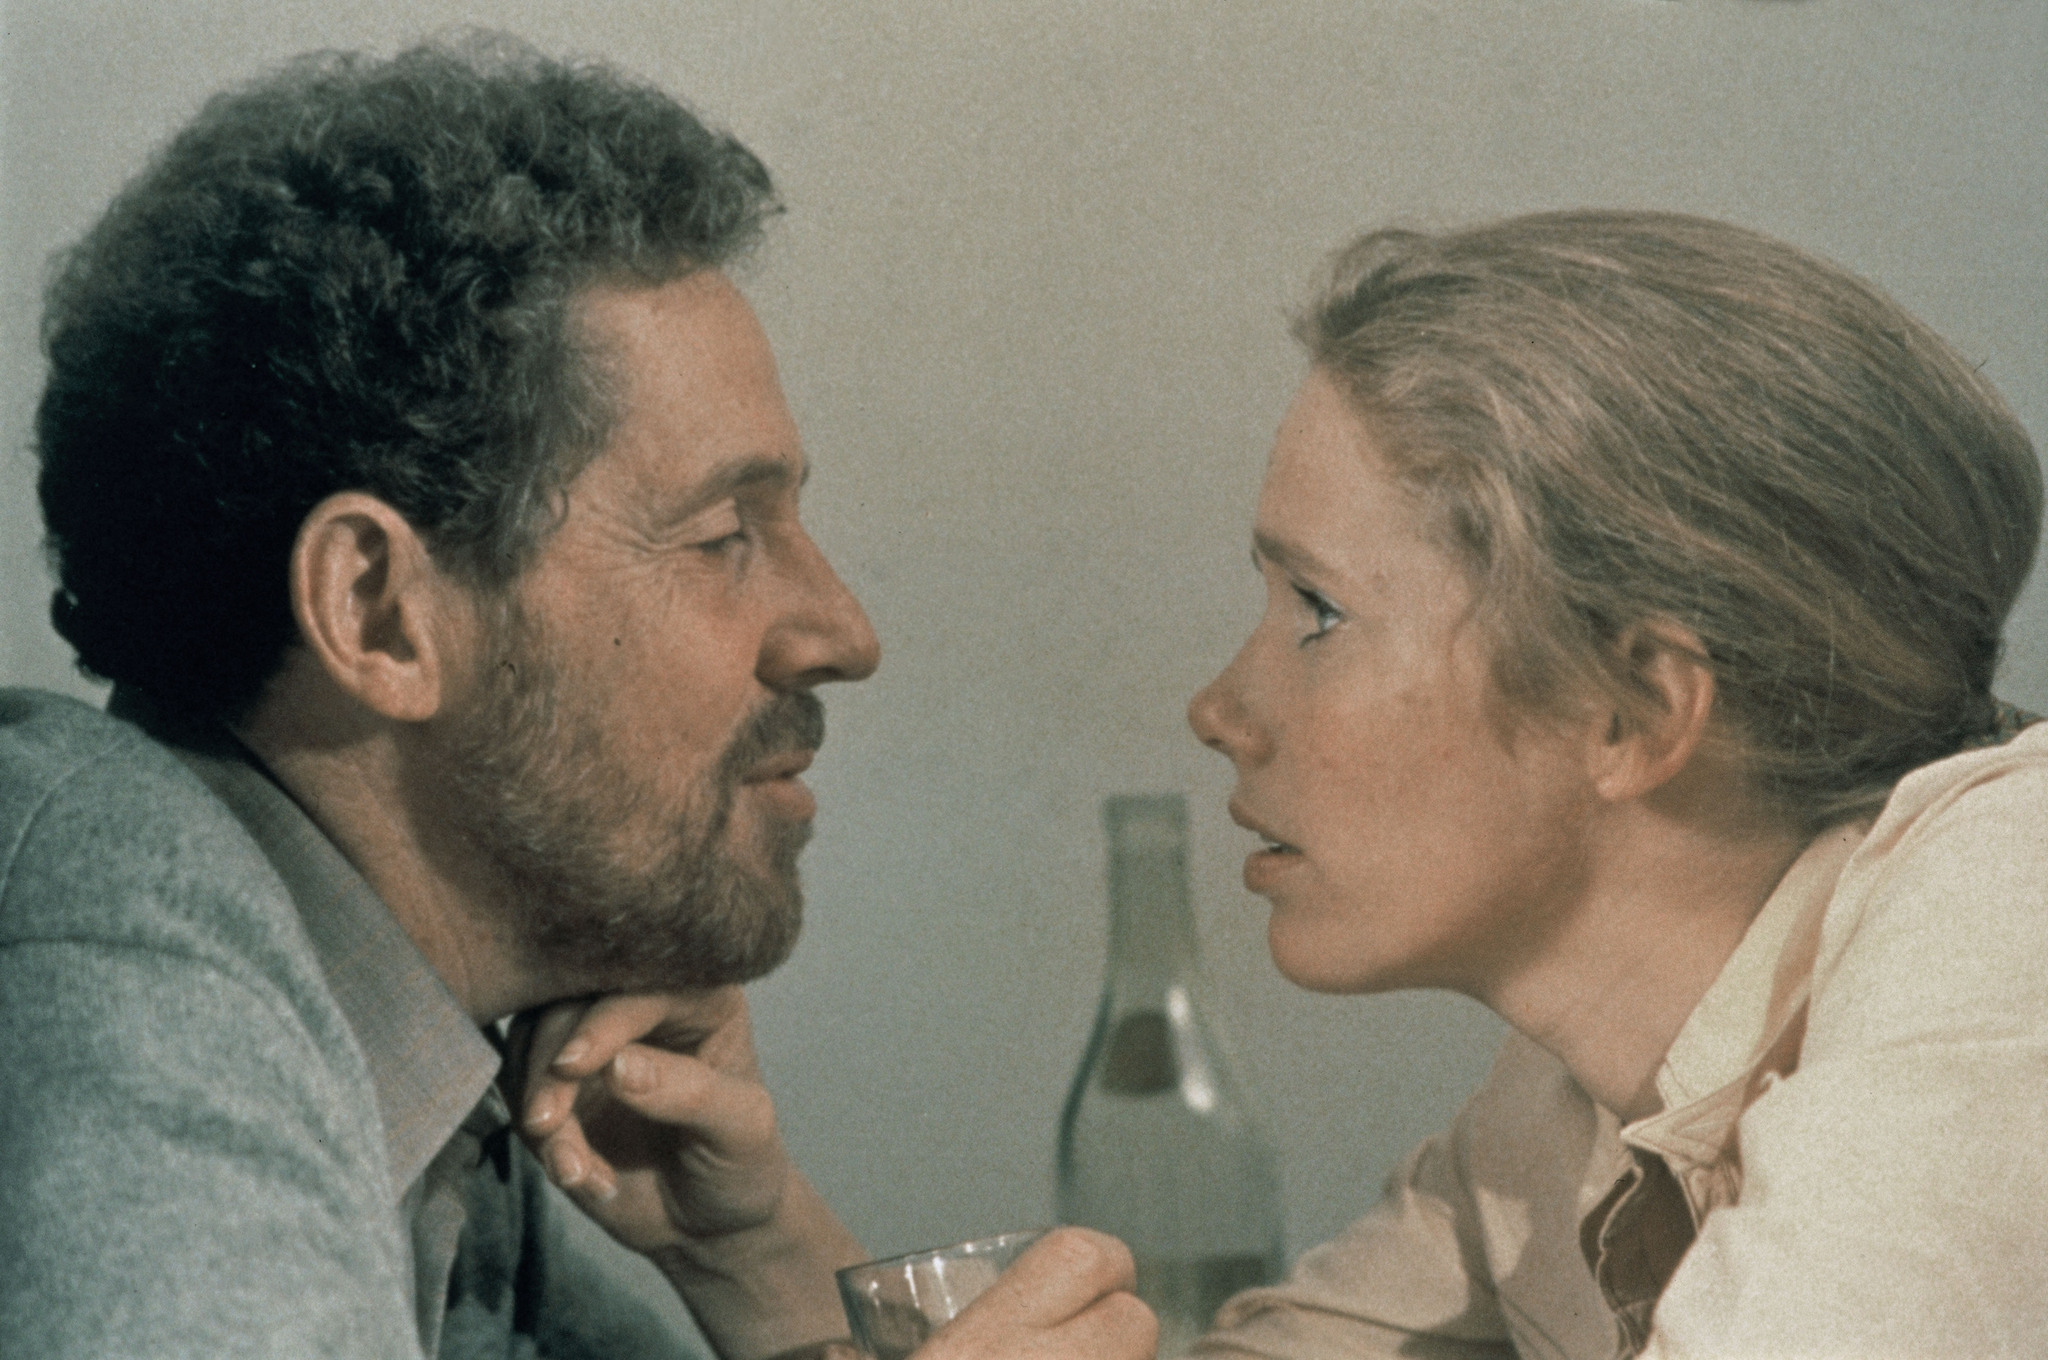 Still of Erland Josephson and Liv Ullmann in Scener ur ett äktenskap (1973)